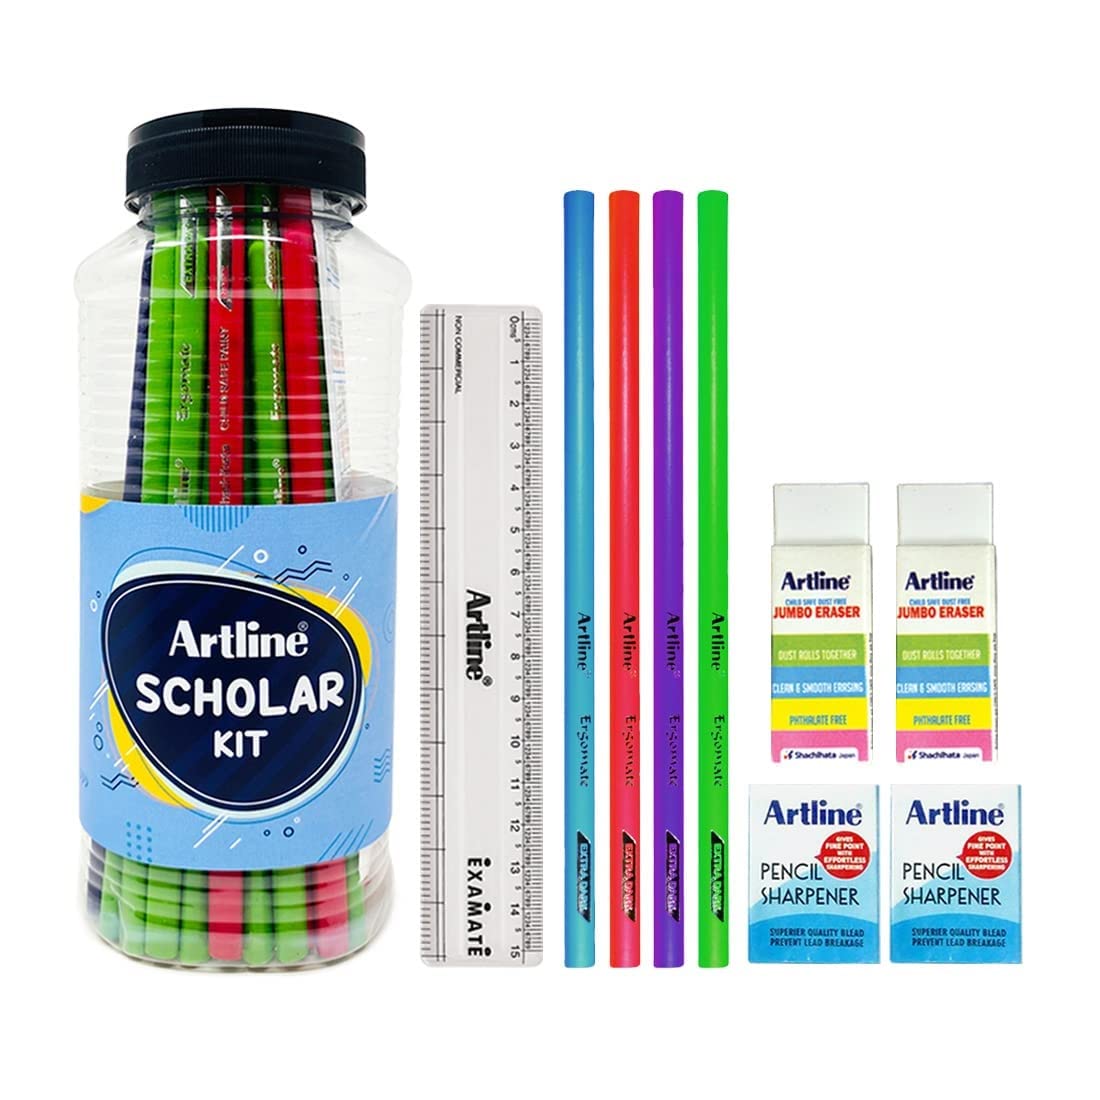 Artline Scholar Kit Jar Pack